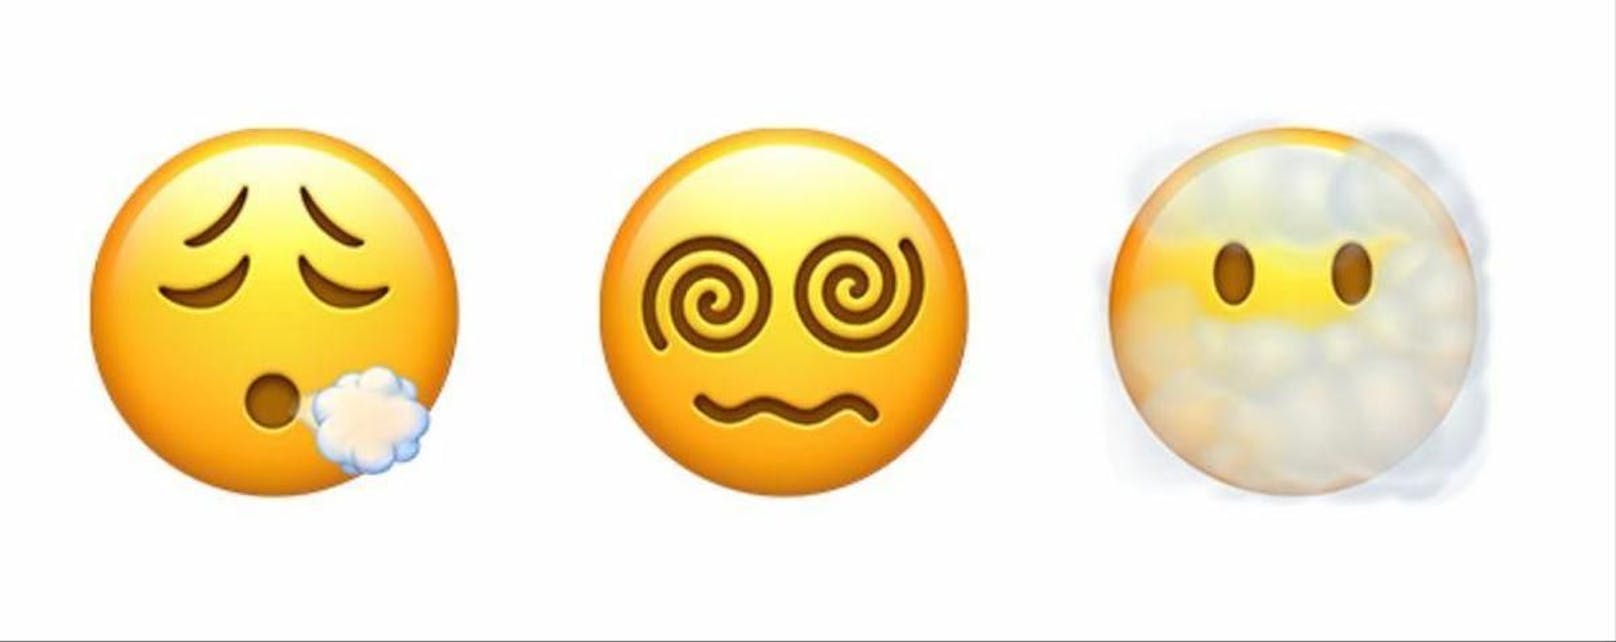 Außerdem kommt mit dem Software-Update eine Reihe neuer Emojis wie beispielsweise diese Smileys.